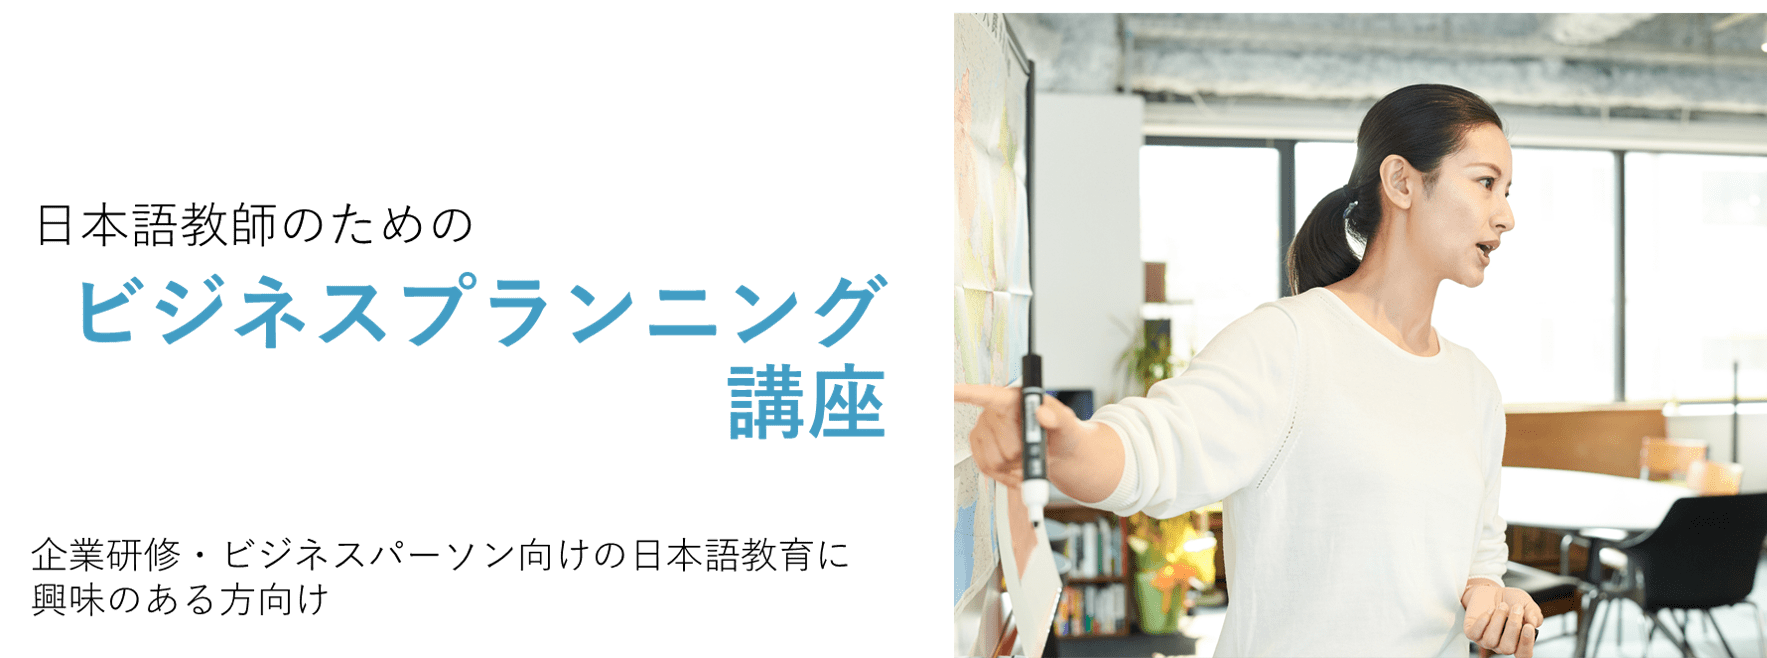 企業、ビジネスパーソン向け日本語教育に興味のある日本語教師のためのビジネスプランニング講座